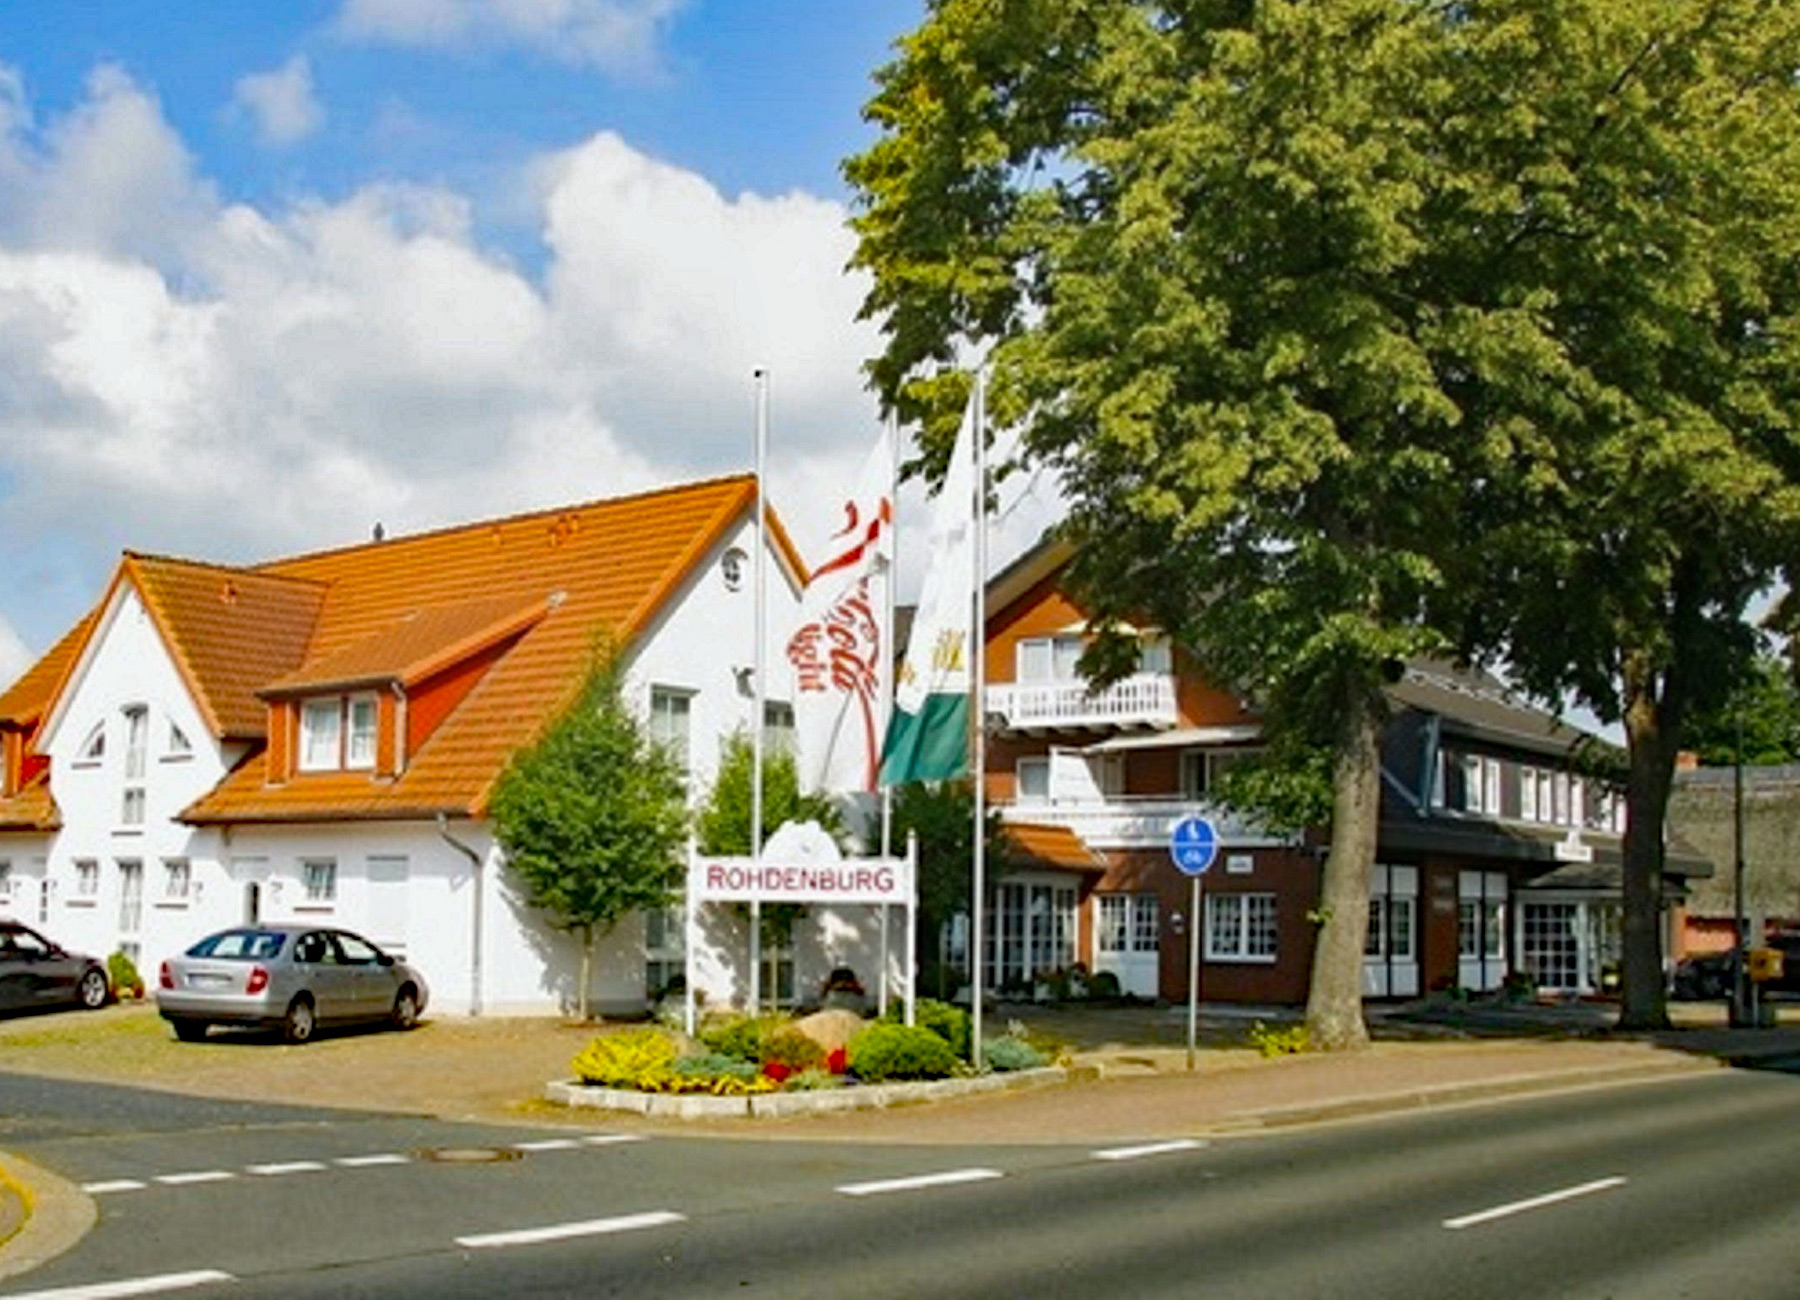 Hotel Rohdenburg in Lilienthal bei Bremen